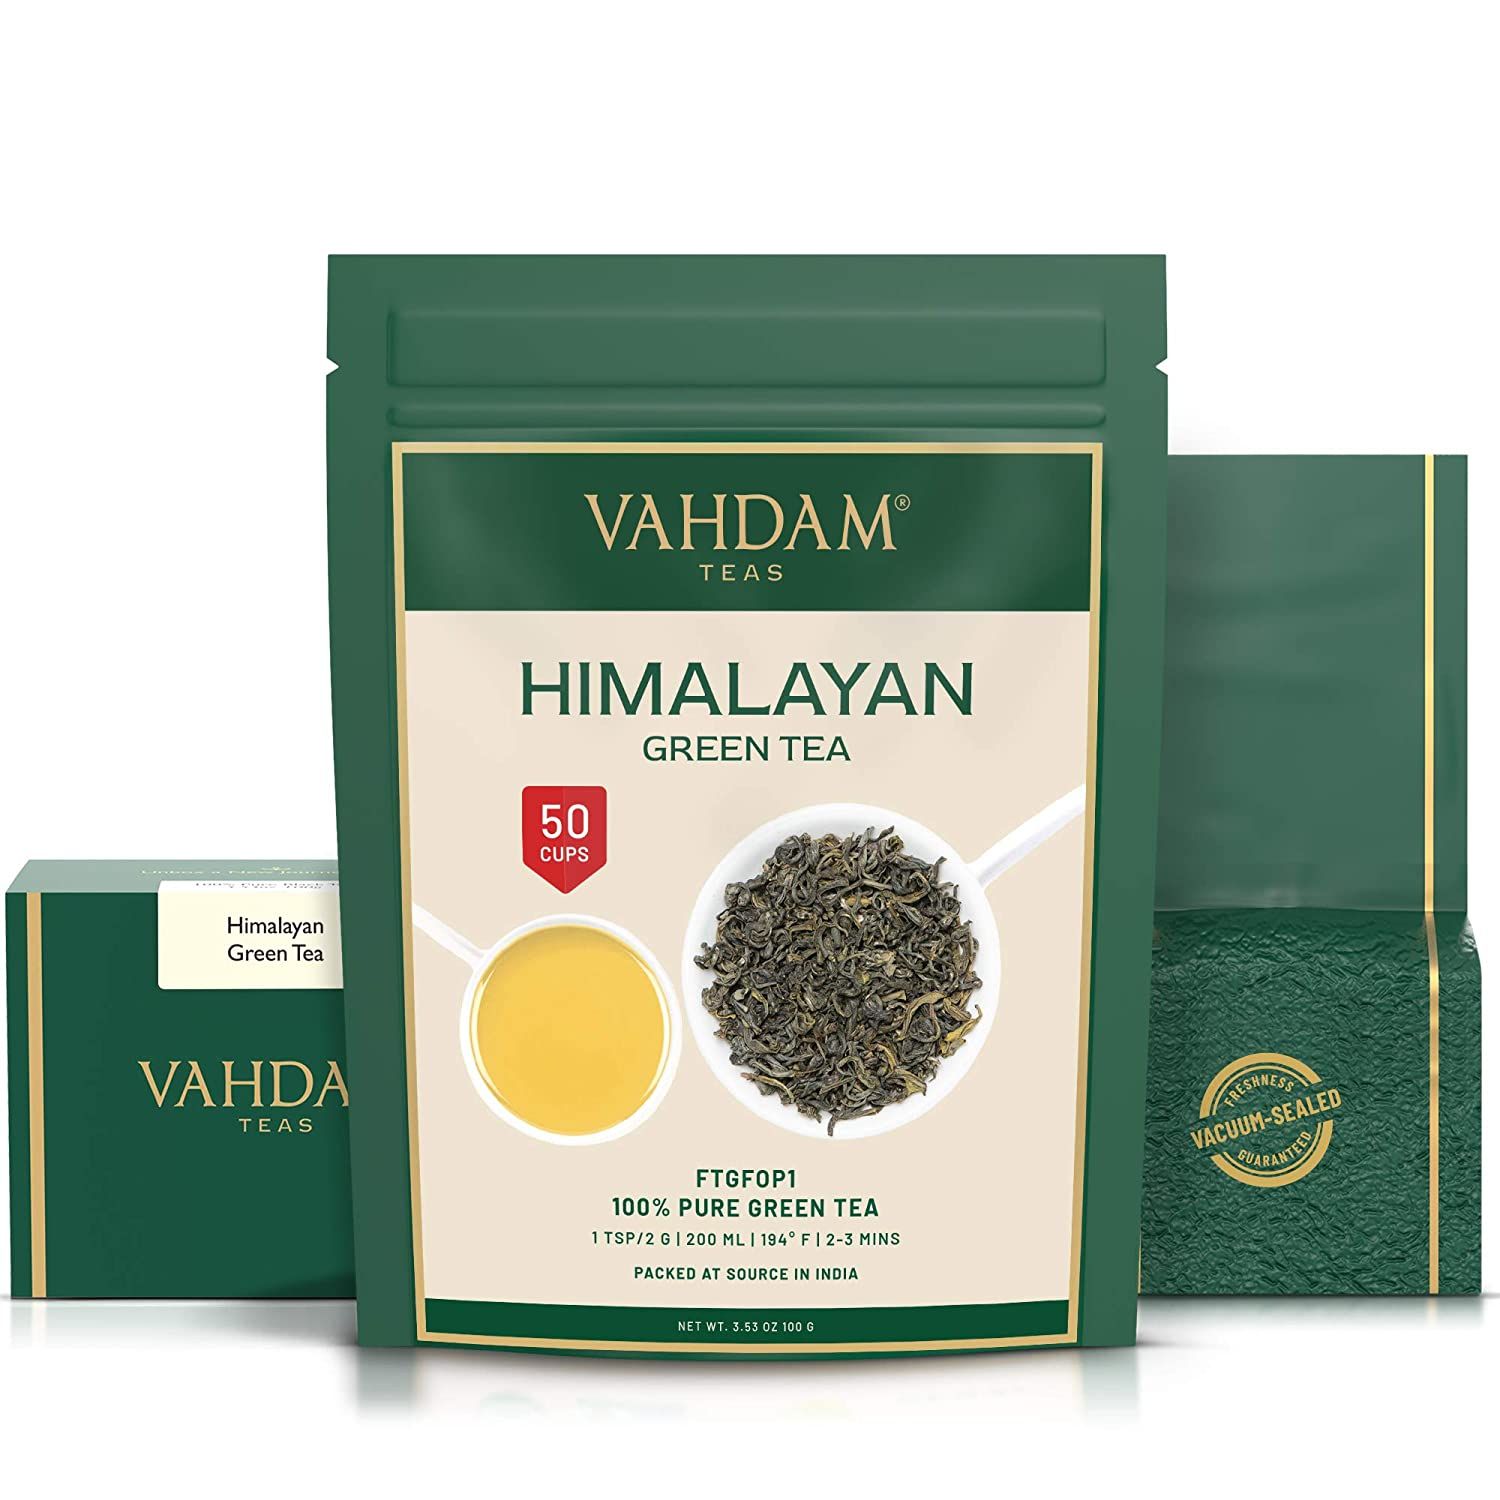 Vahdam Himalayan Green Tea Image